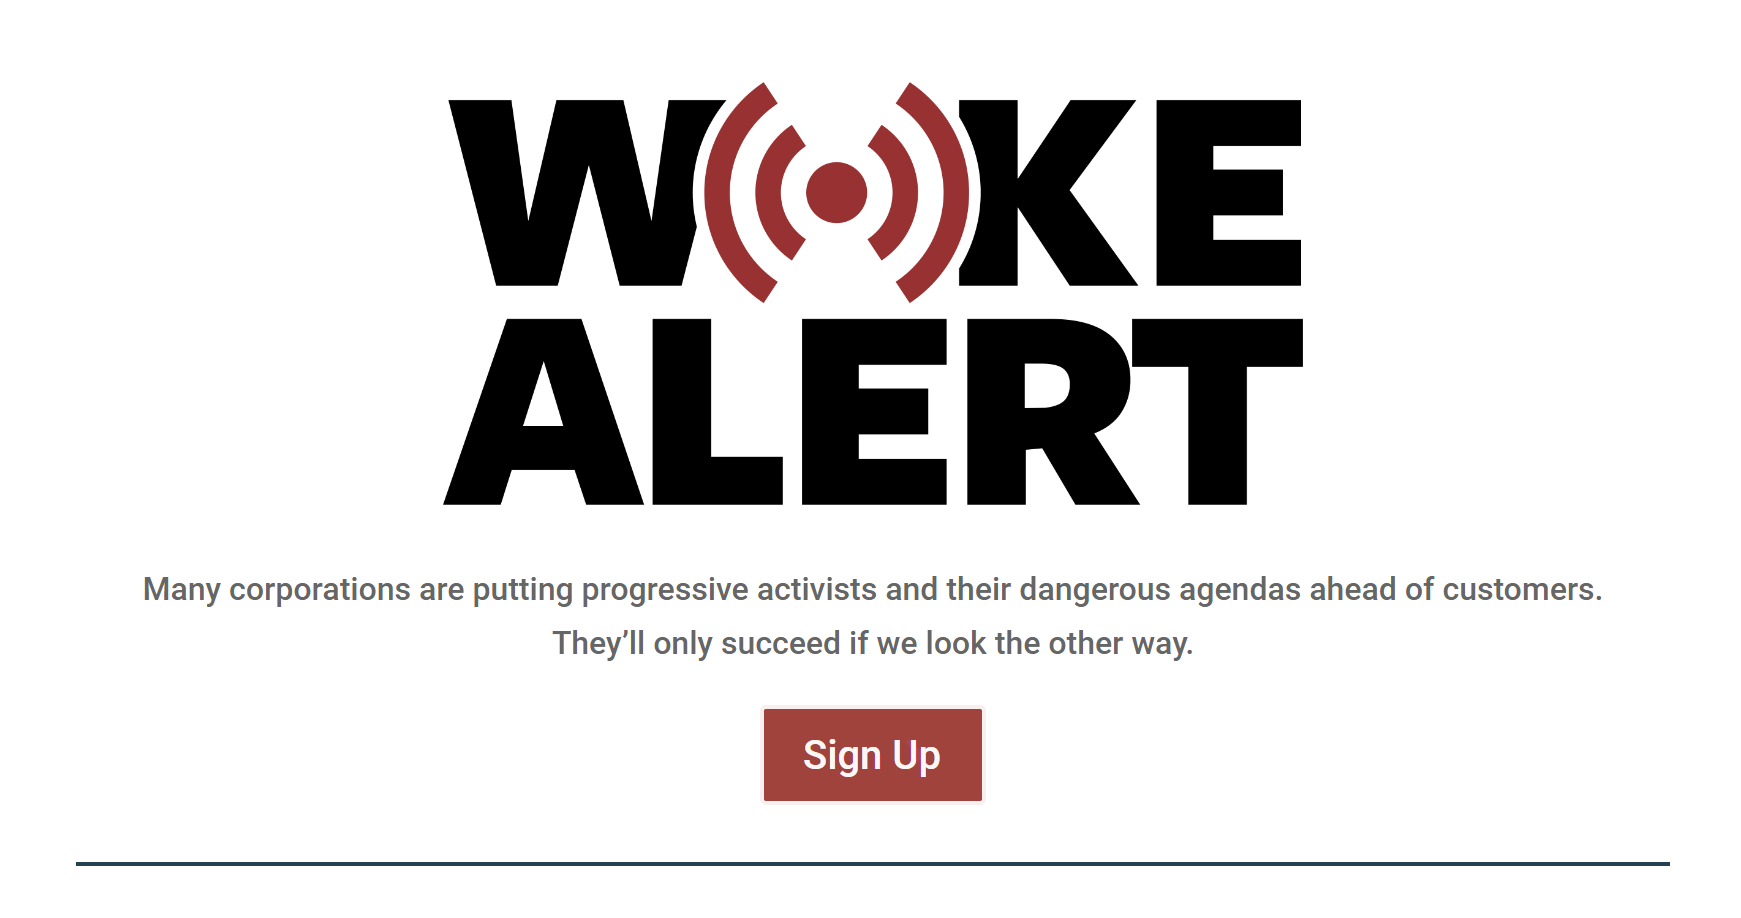 SMS-ben figyelmeztet az amerikai konzervatív csoport a woke termékekre